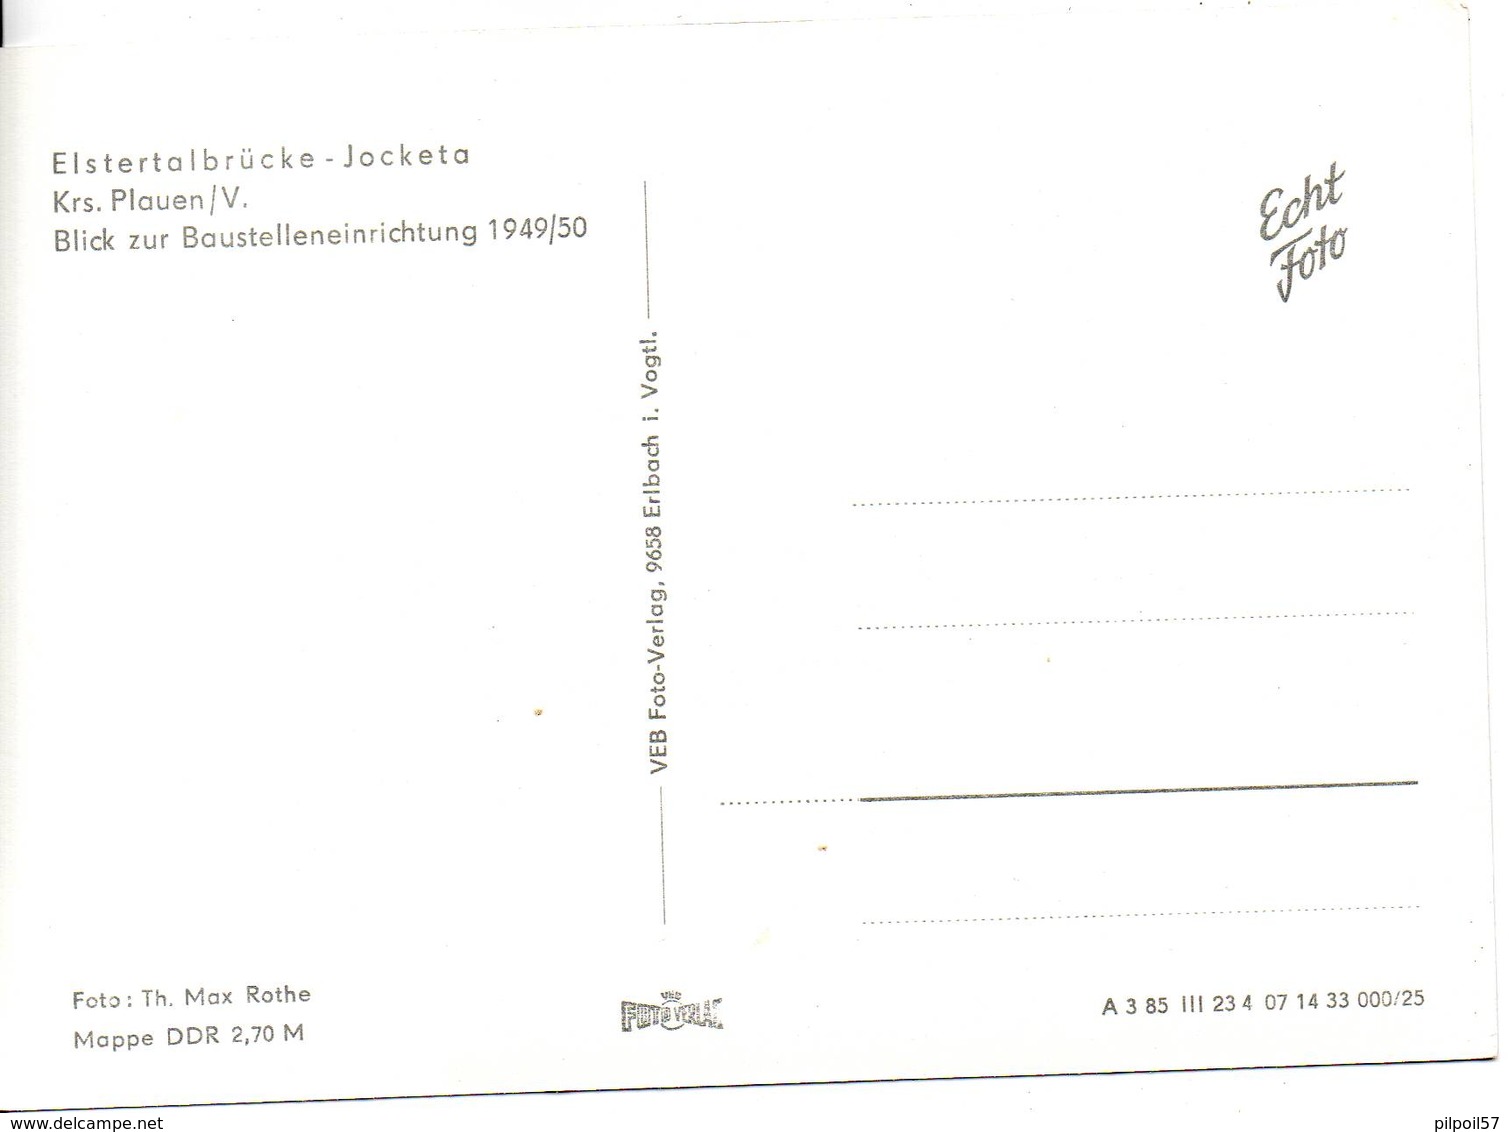 ALLEMAGNE - ELSTERTALBRÜCKE - JOCKETA - Blick Zur Baustelleneinrichtung 1949/50 - Format 10X14,4 - (reproduction) - Pöhl